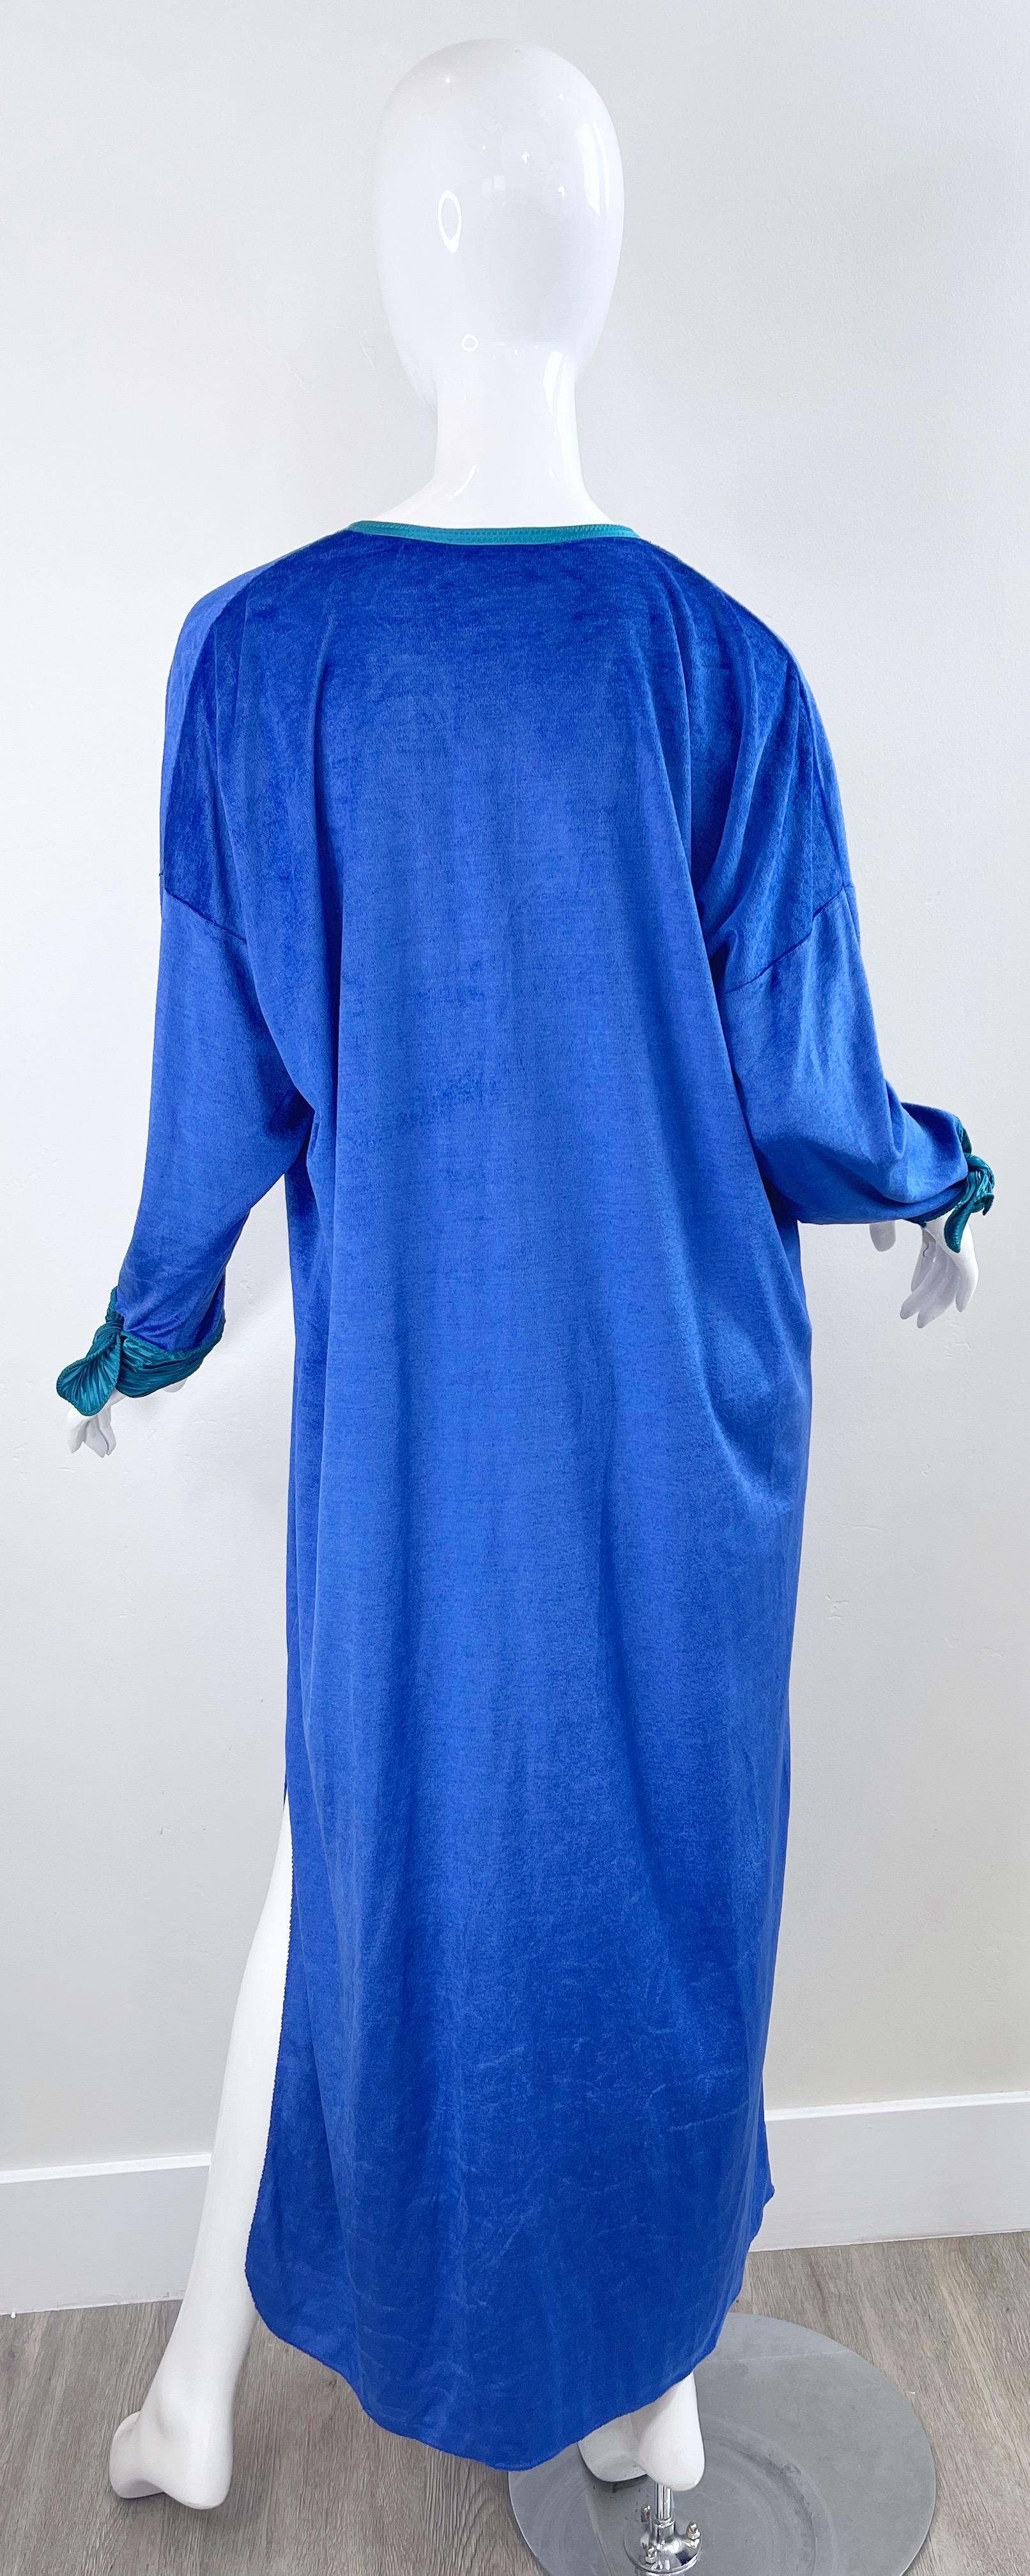 1980s Mary McFadden Royal Blue Teal Velour Vintage 80s Caftan Maxi Dress Kaftan For Sale 8